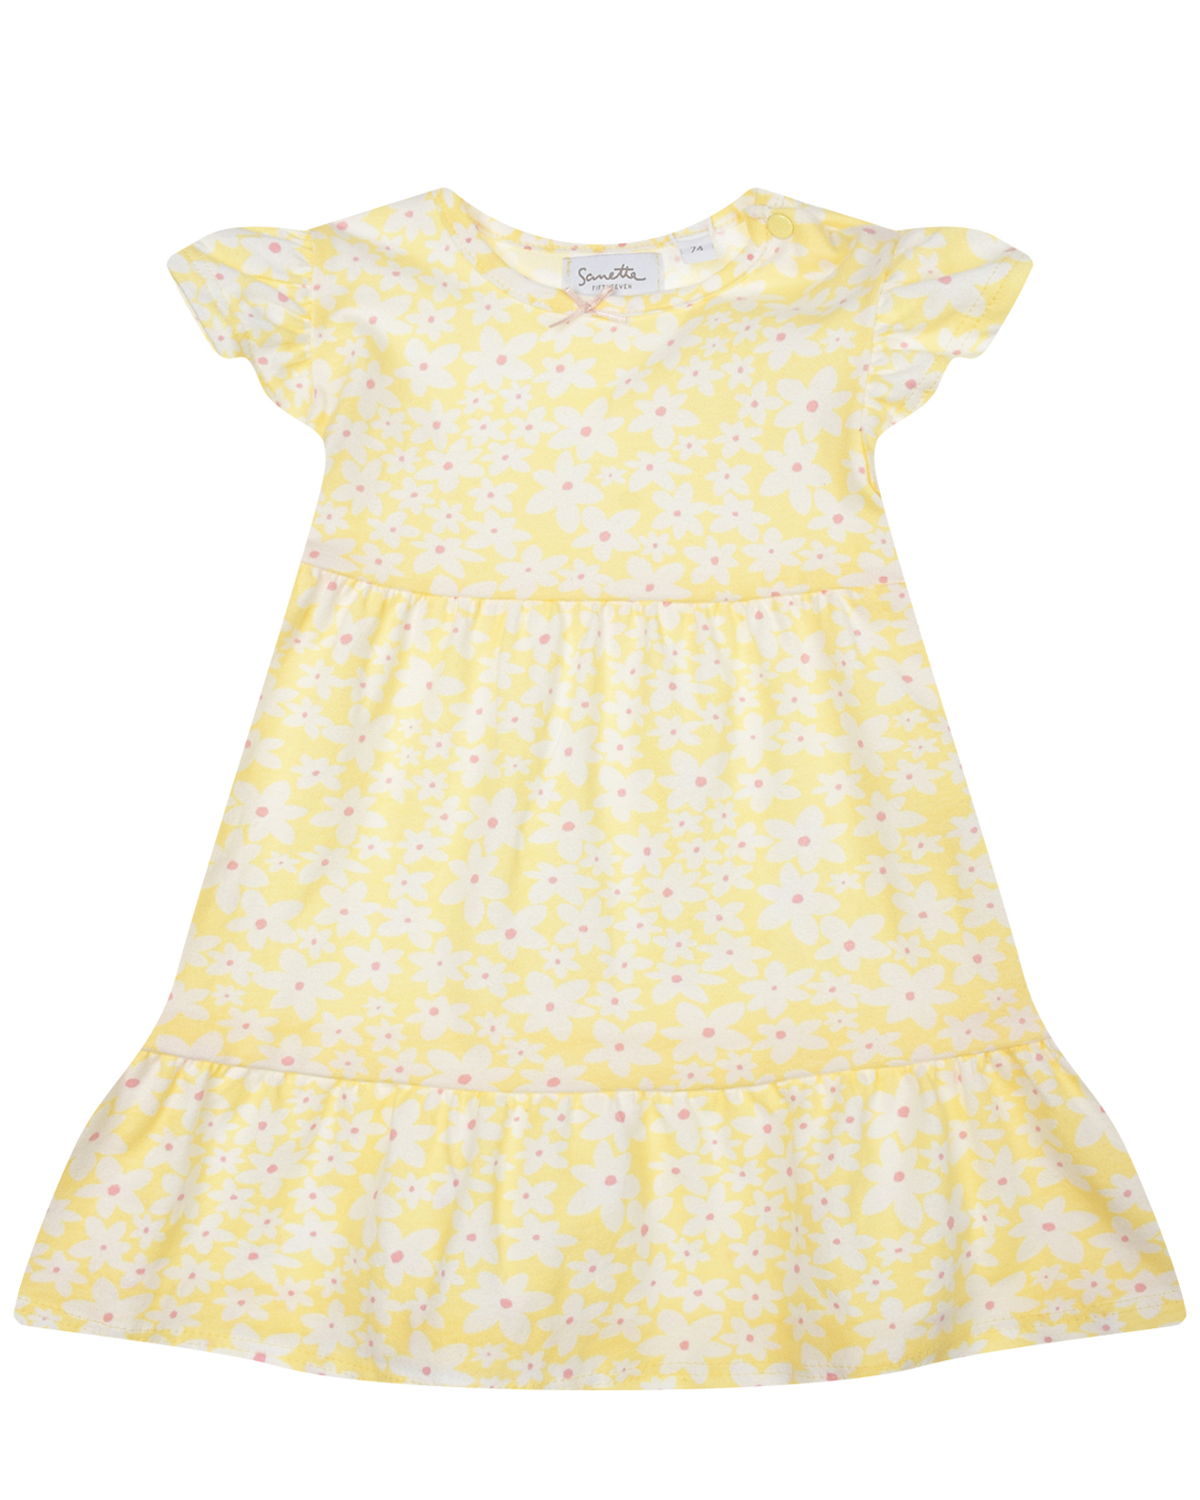 Желтое платье с цветочным принтом Sanetta fiftyseven, размер 92 - фото 1